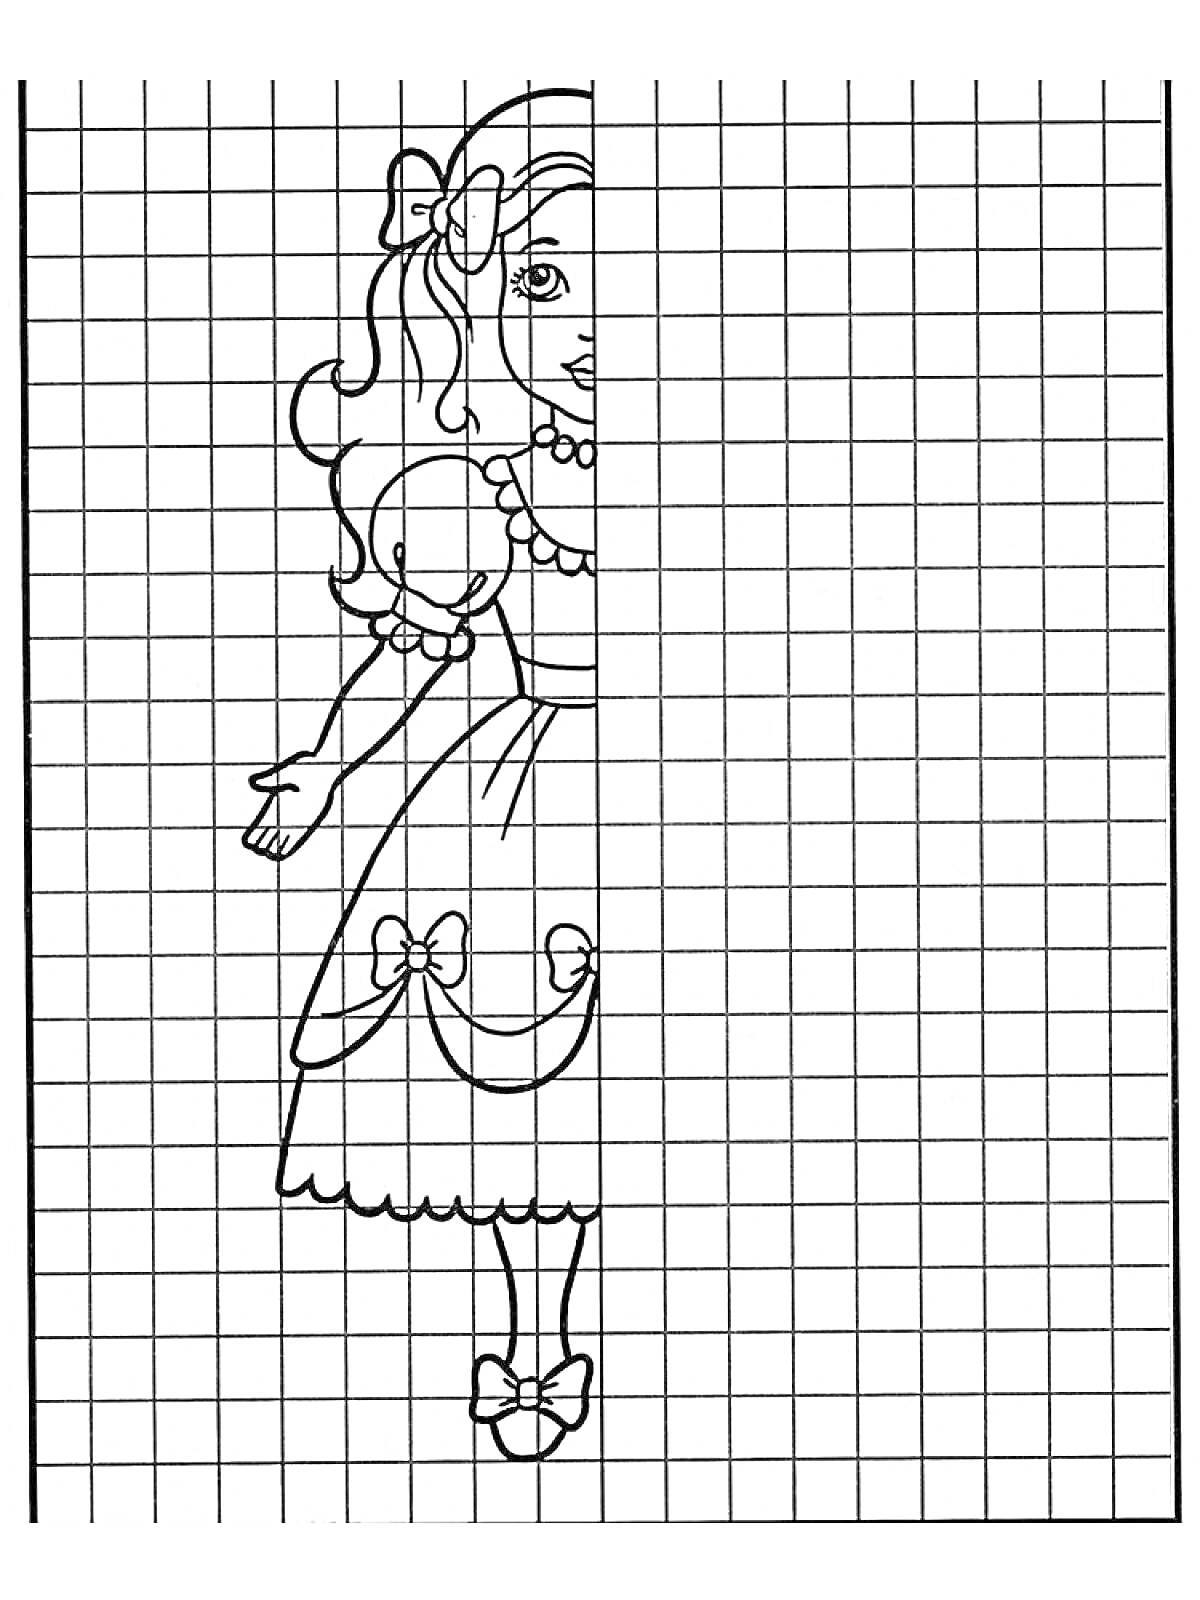 Раскраска Раскраска по клеточкам с половинкой девочки, одетой в праздничное платье с бантиками в волосах и украшениями.